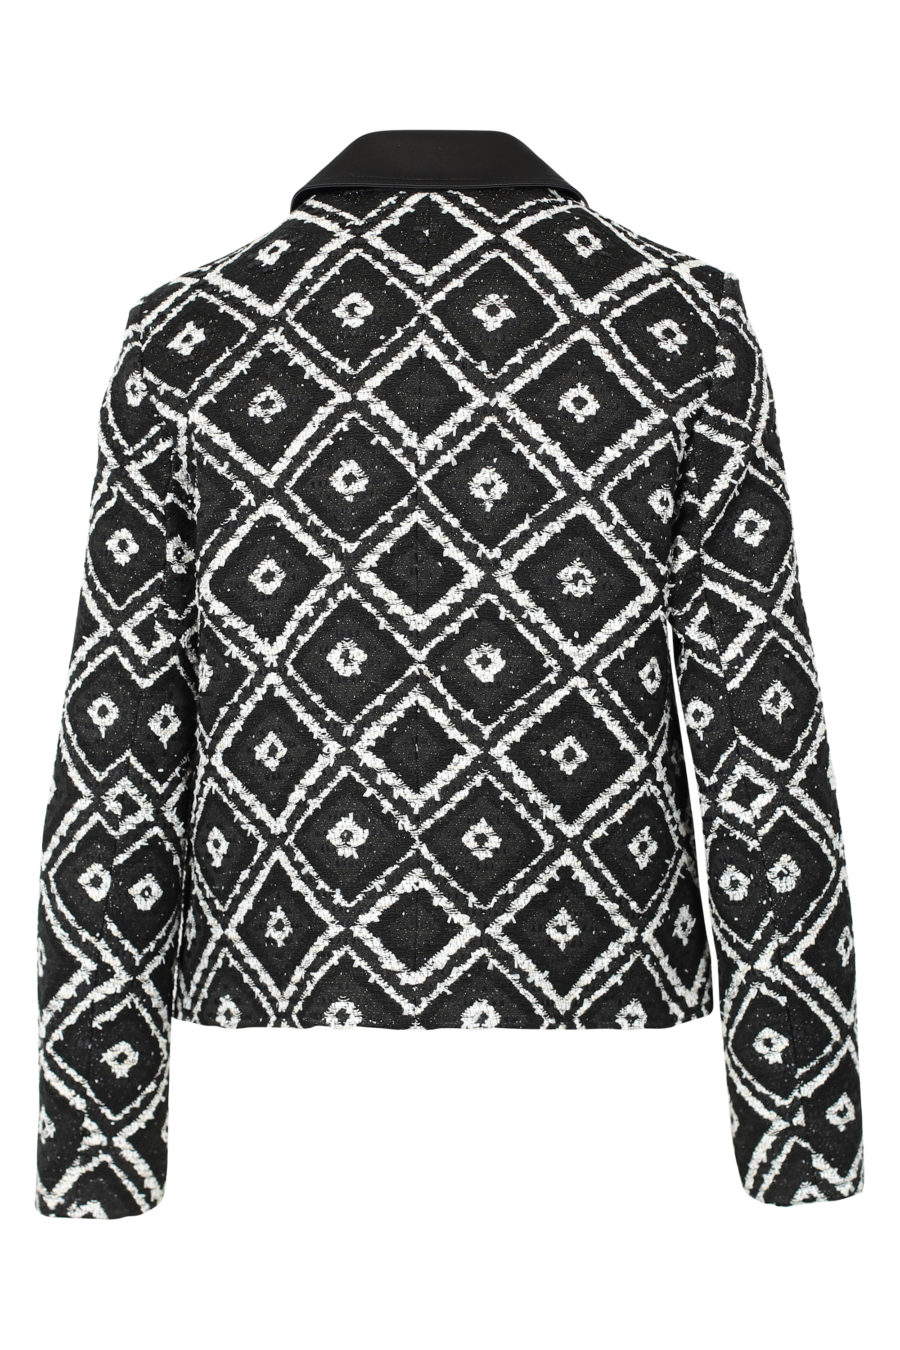 Black and white geometric jacket "Boucle" - IMG 3119